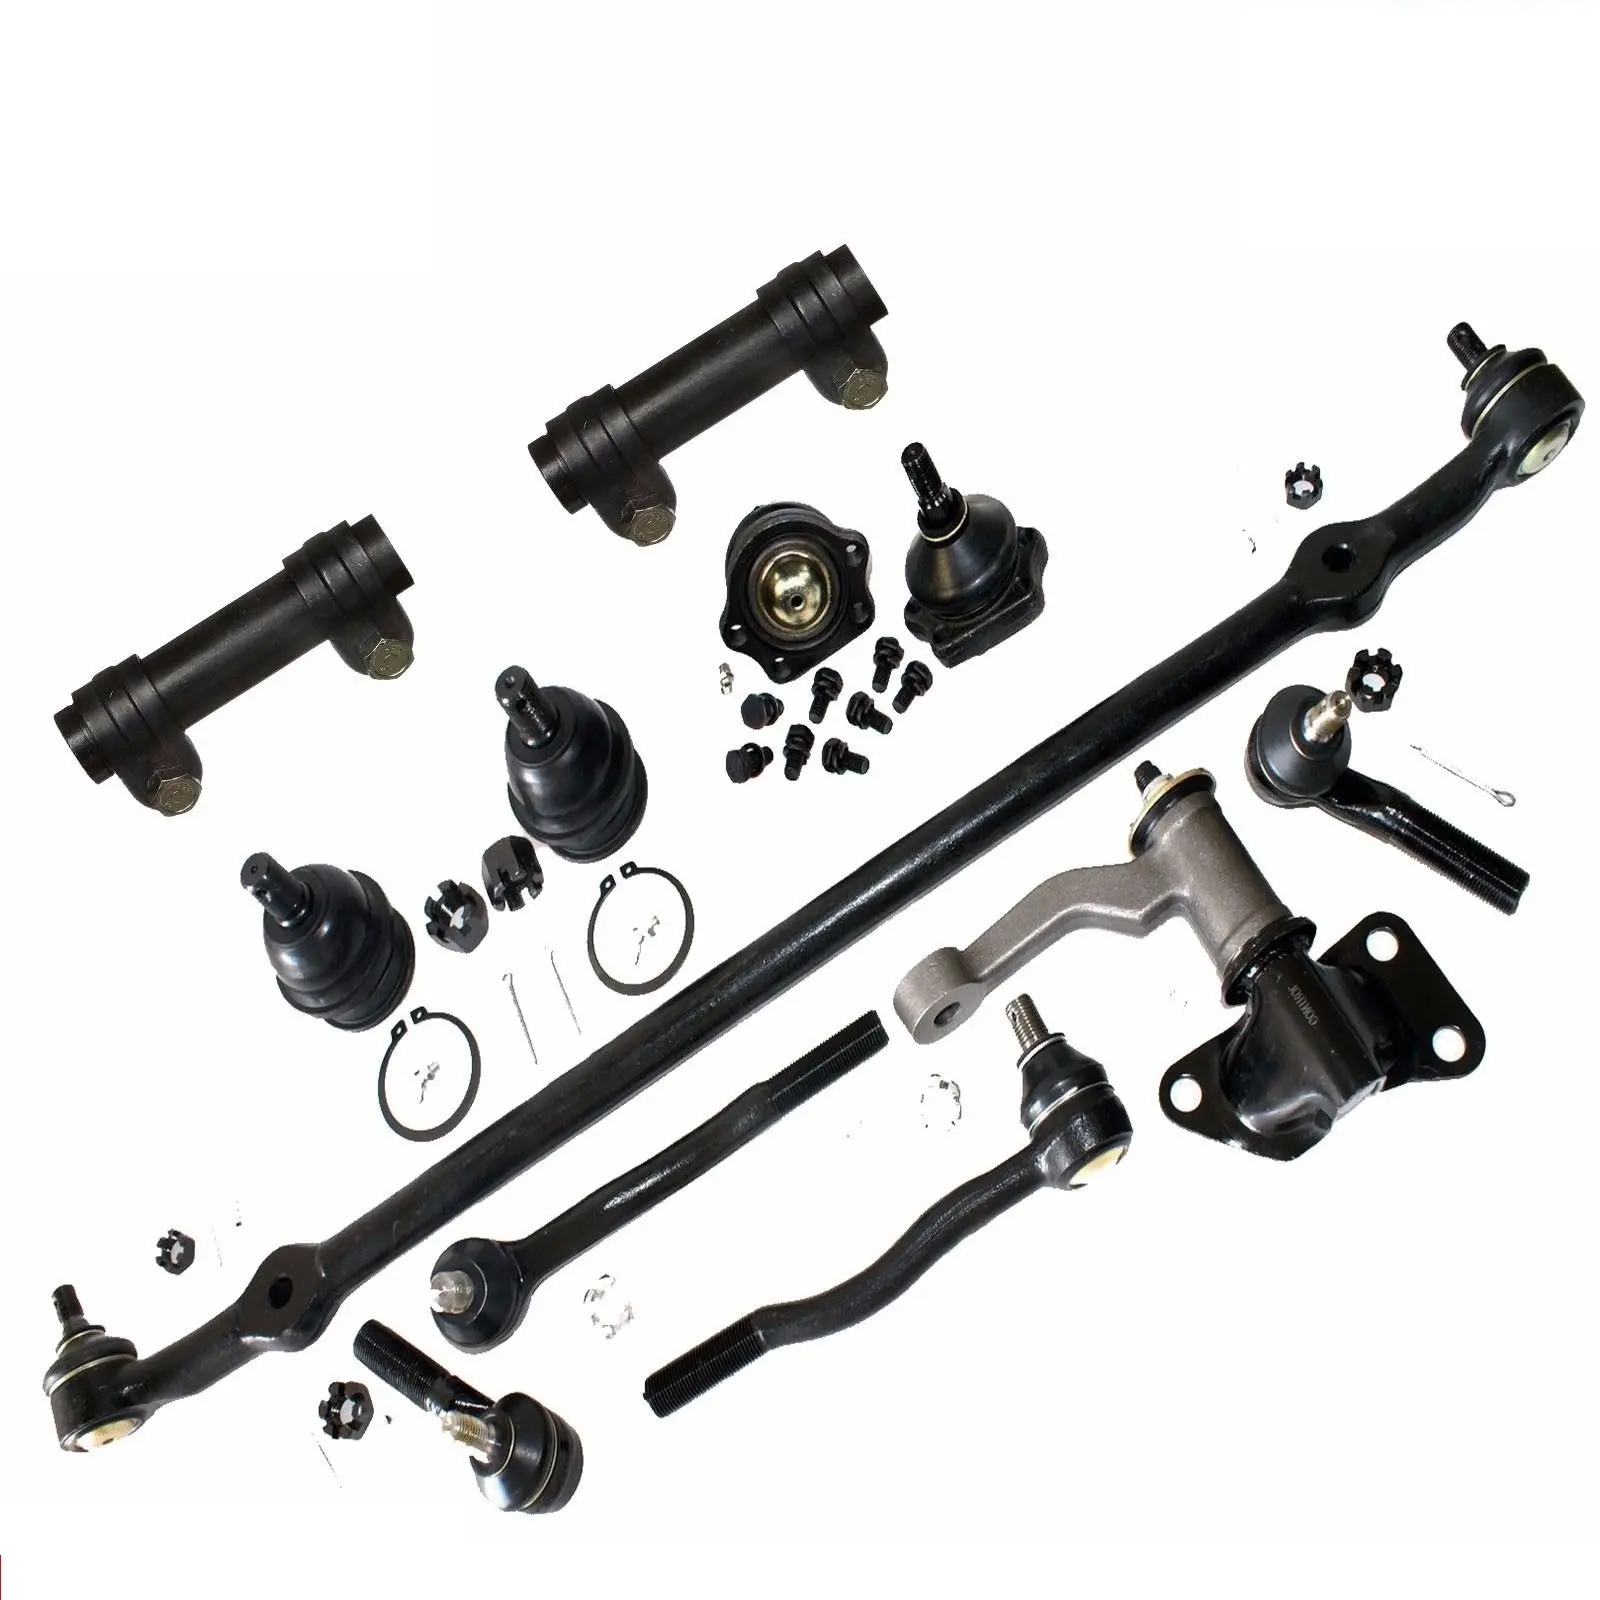 Front Tie Rod End Center Drag Link Idler Arm Steering Kit Set 6pc for D21 4WD